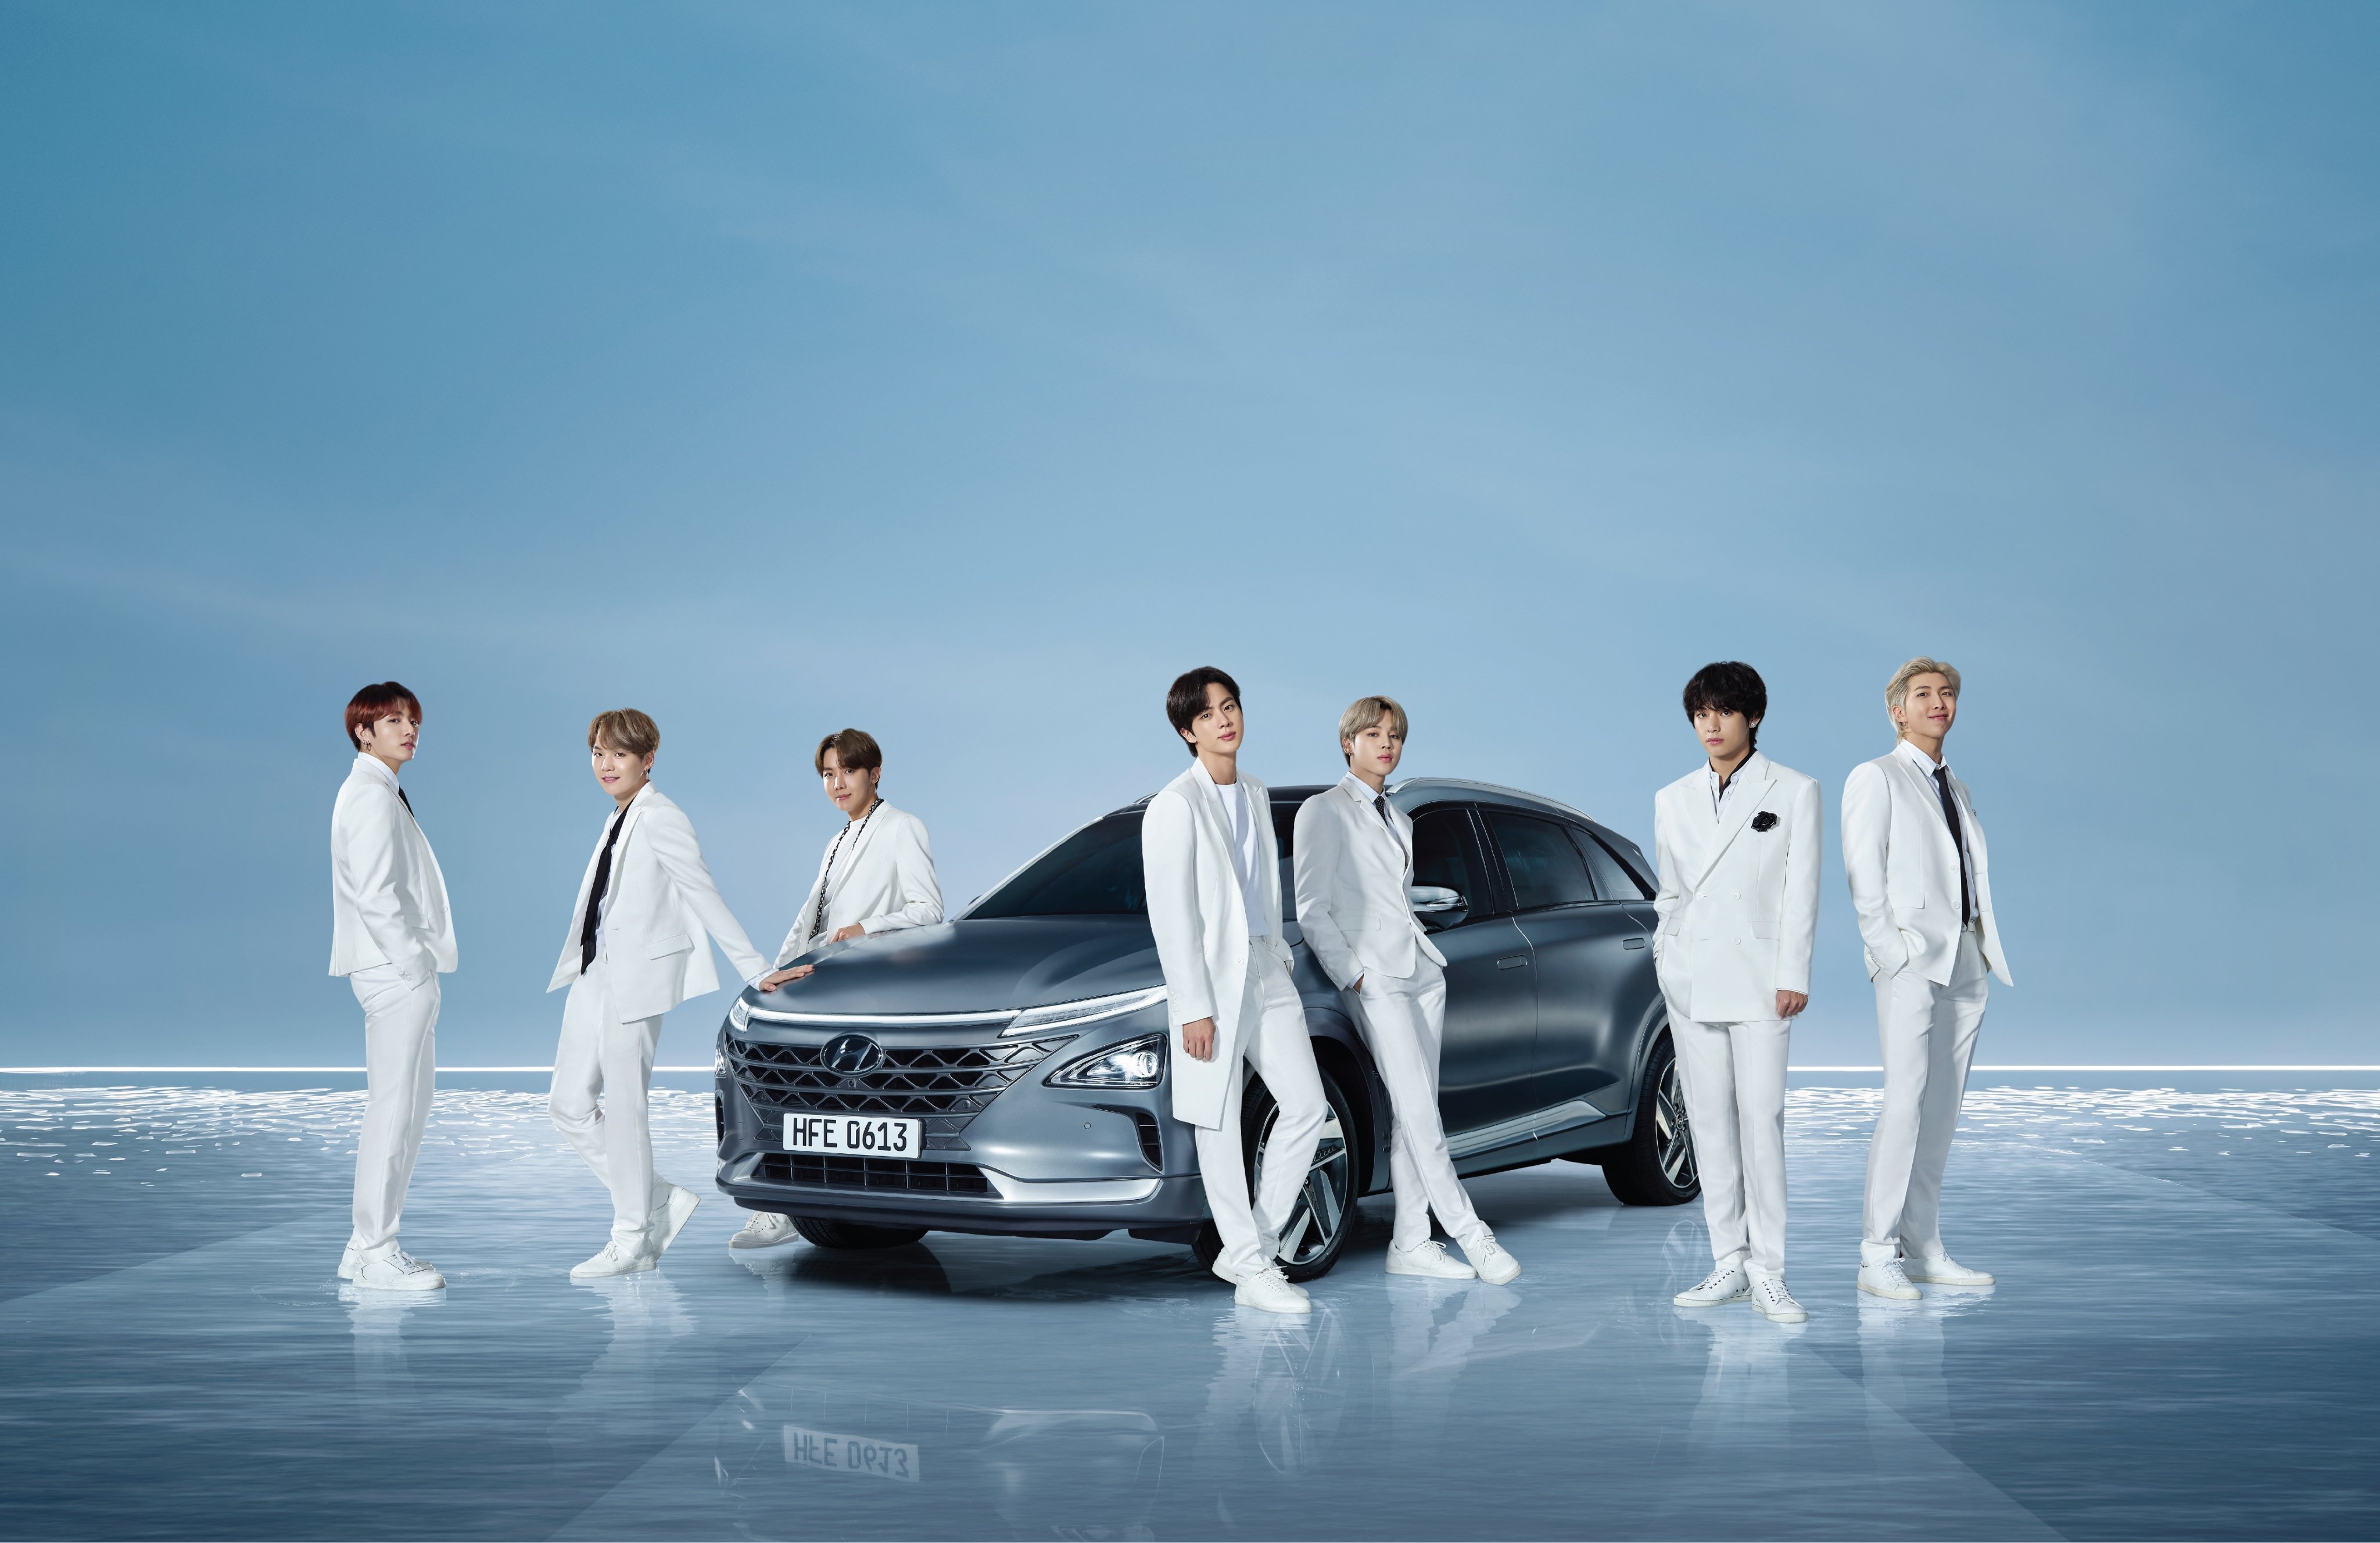 BTS Jadi Brand Ambassador Hyundai NEXO, Setelah Sukses dengan Palisade